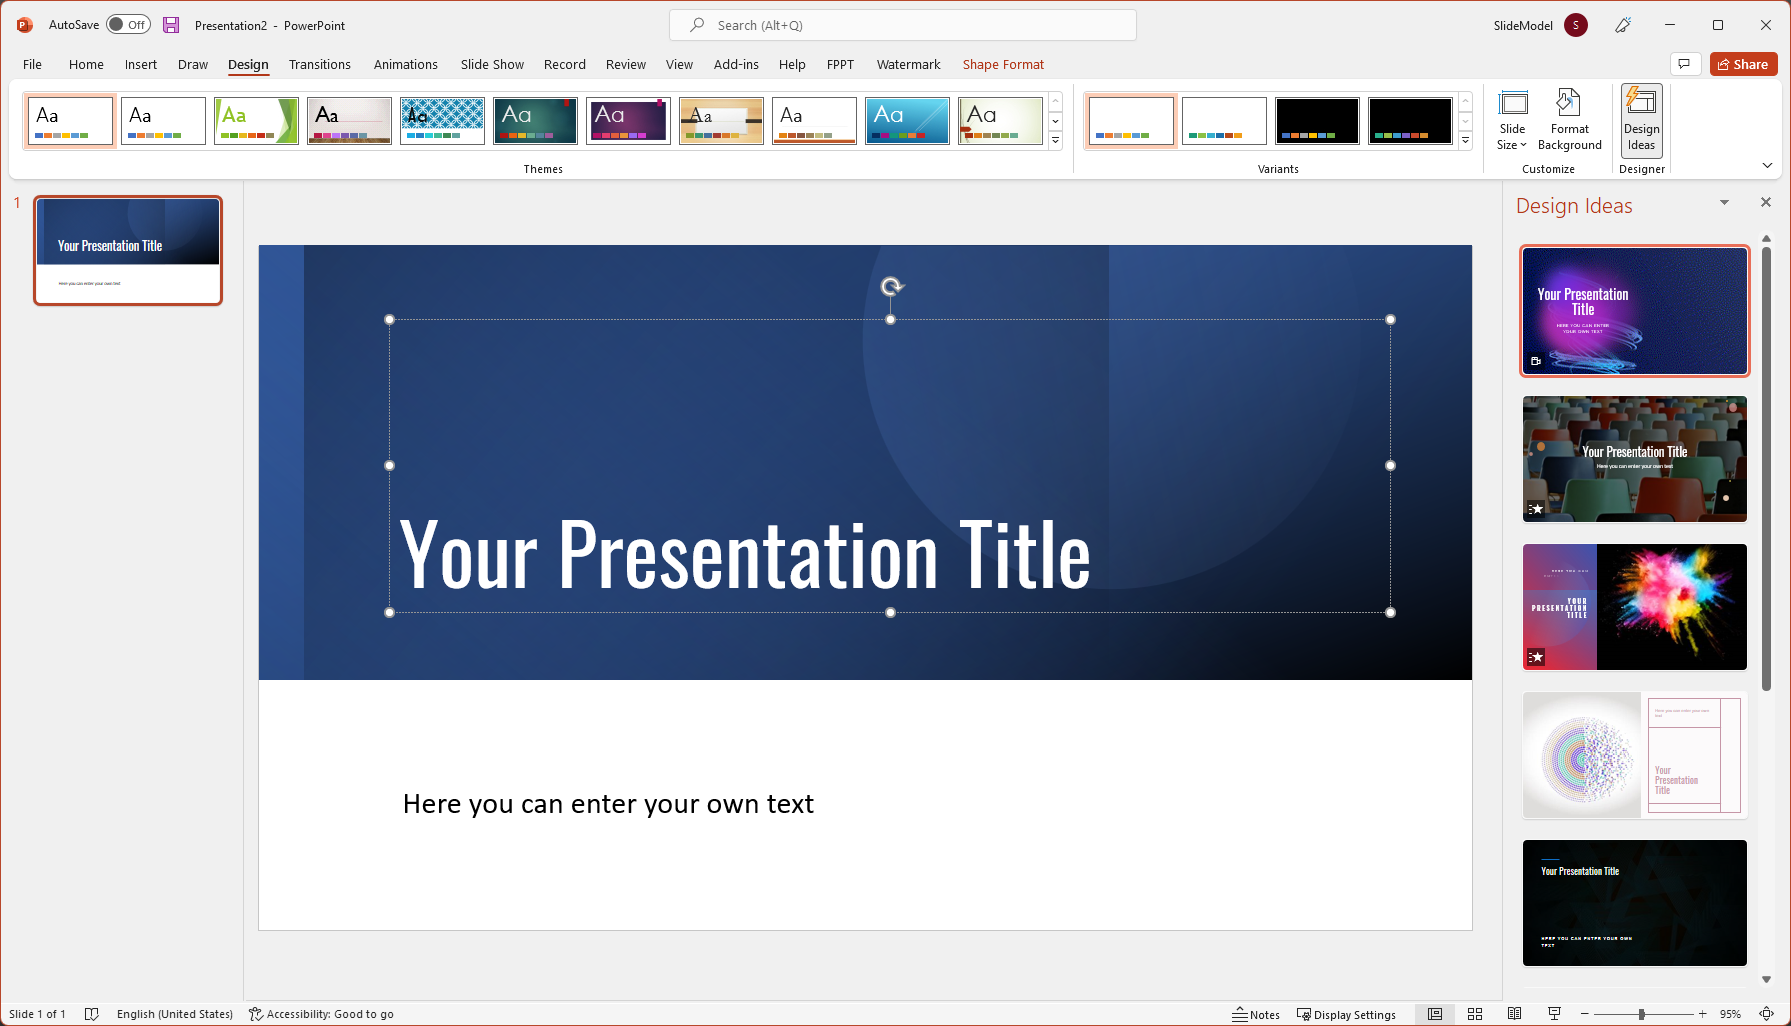 powerpoint slide design for presentation